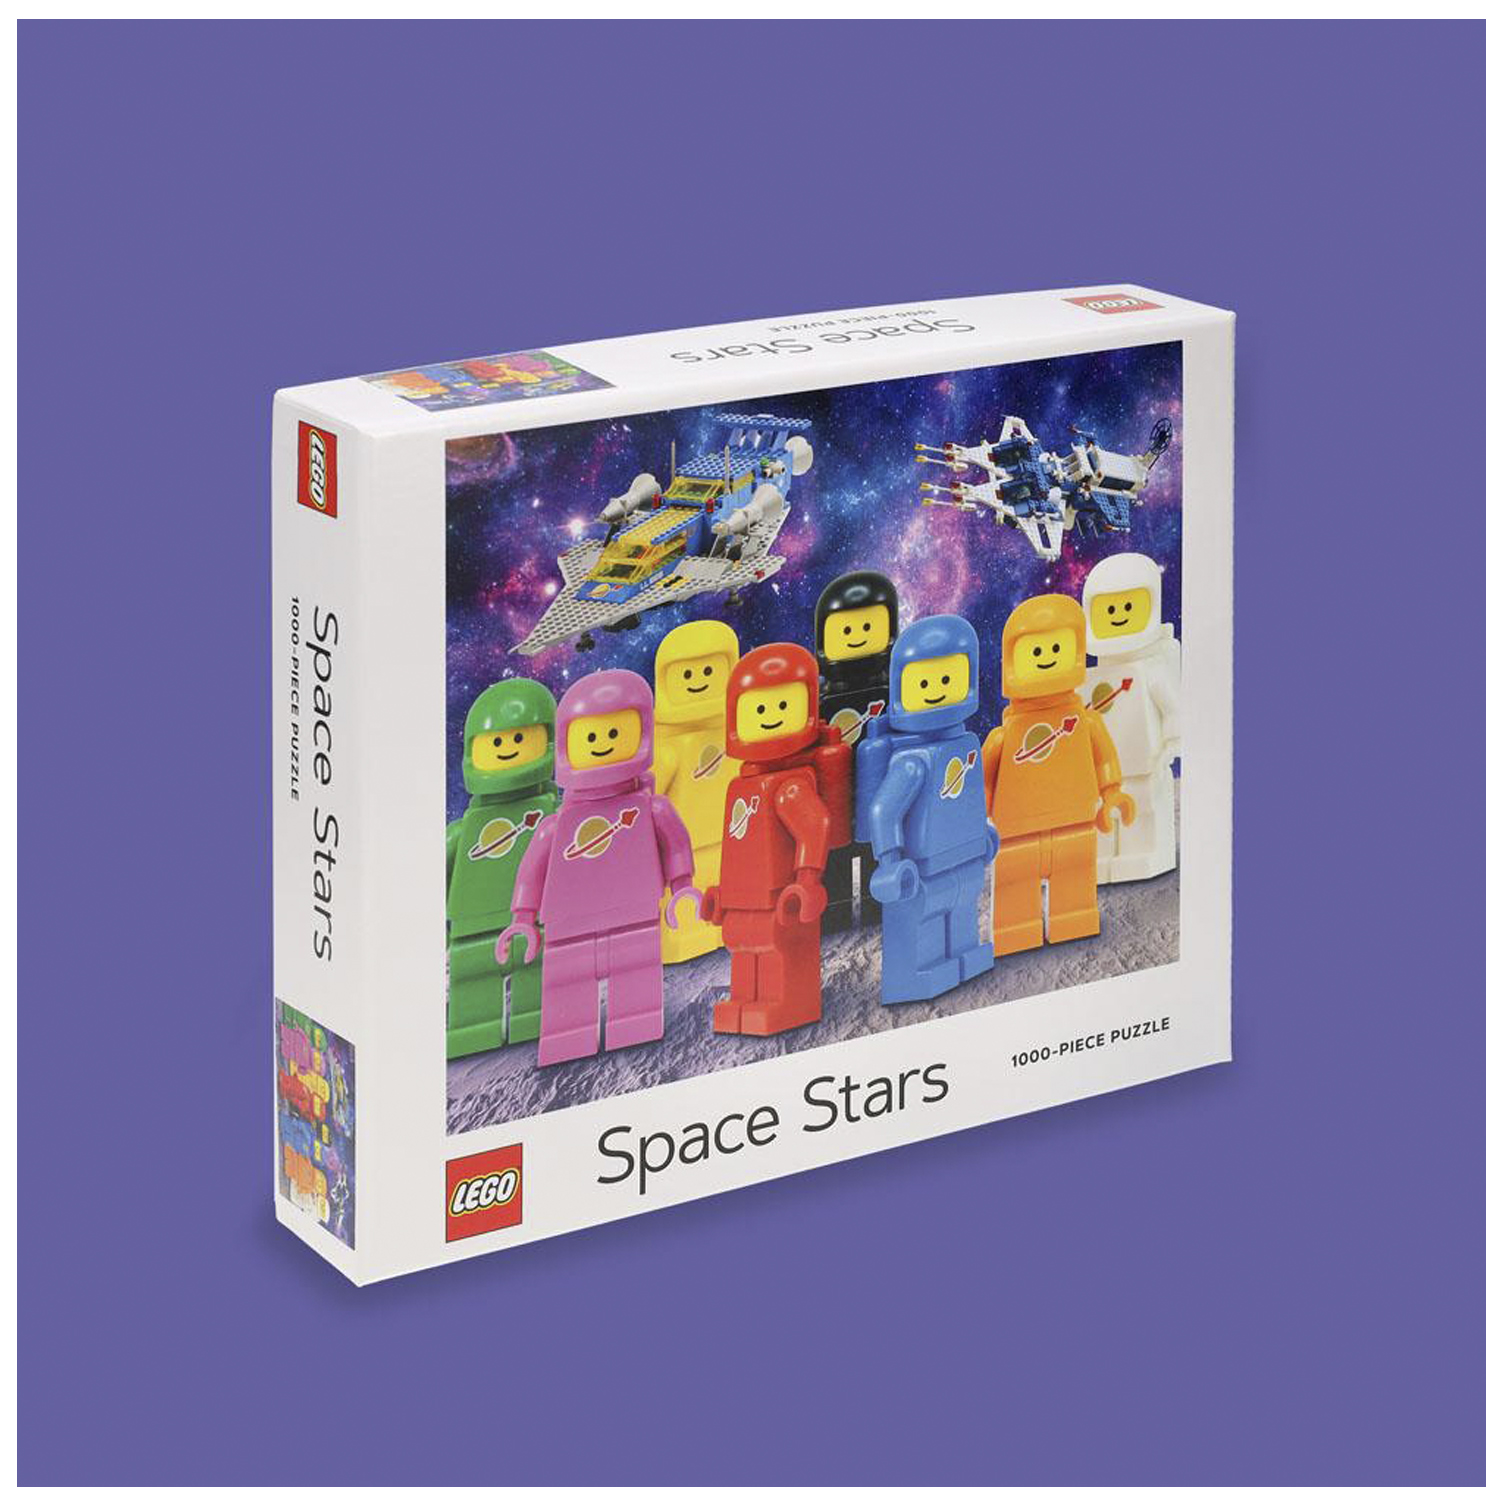 Пазл LEGO Space Stars 1000 элементов - фото 3